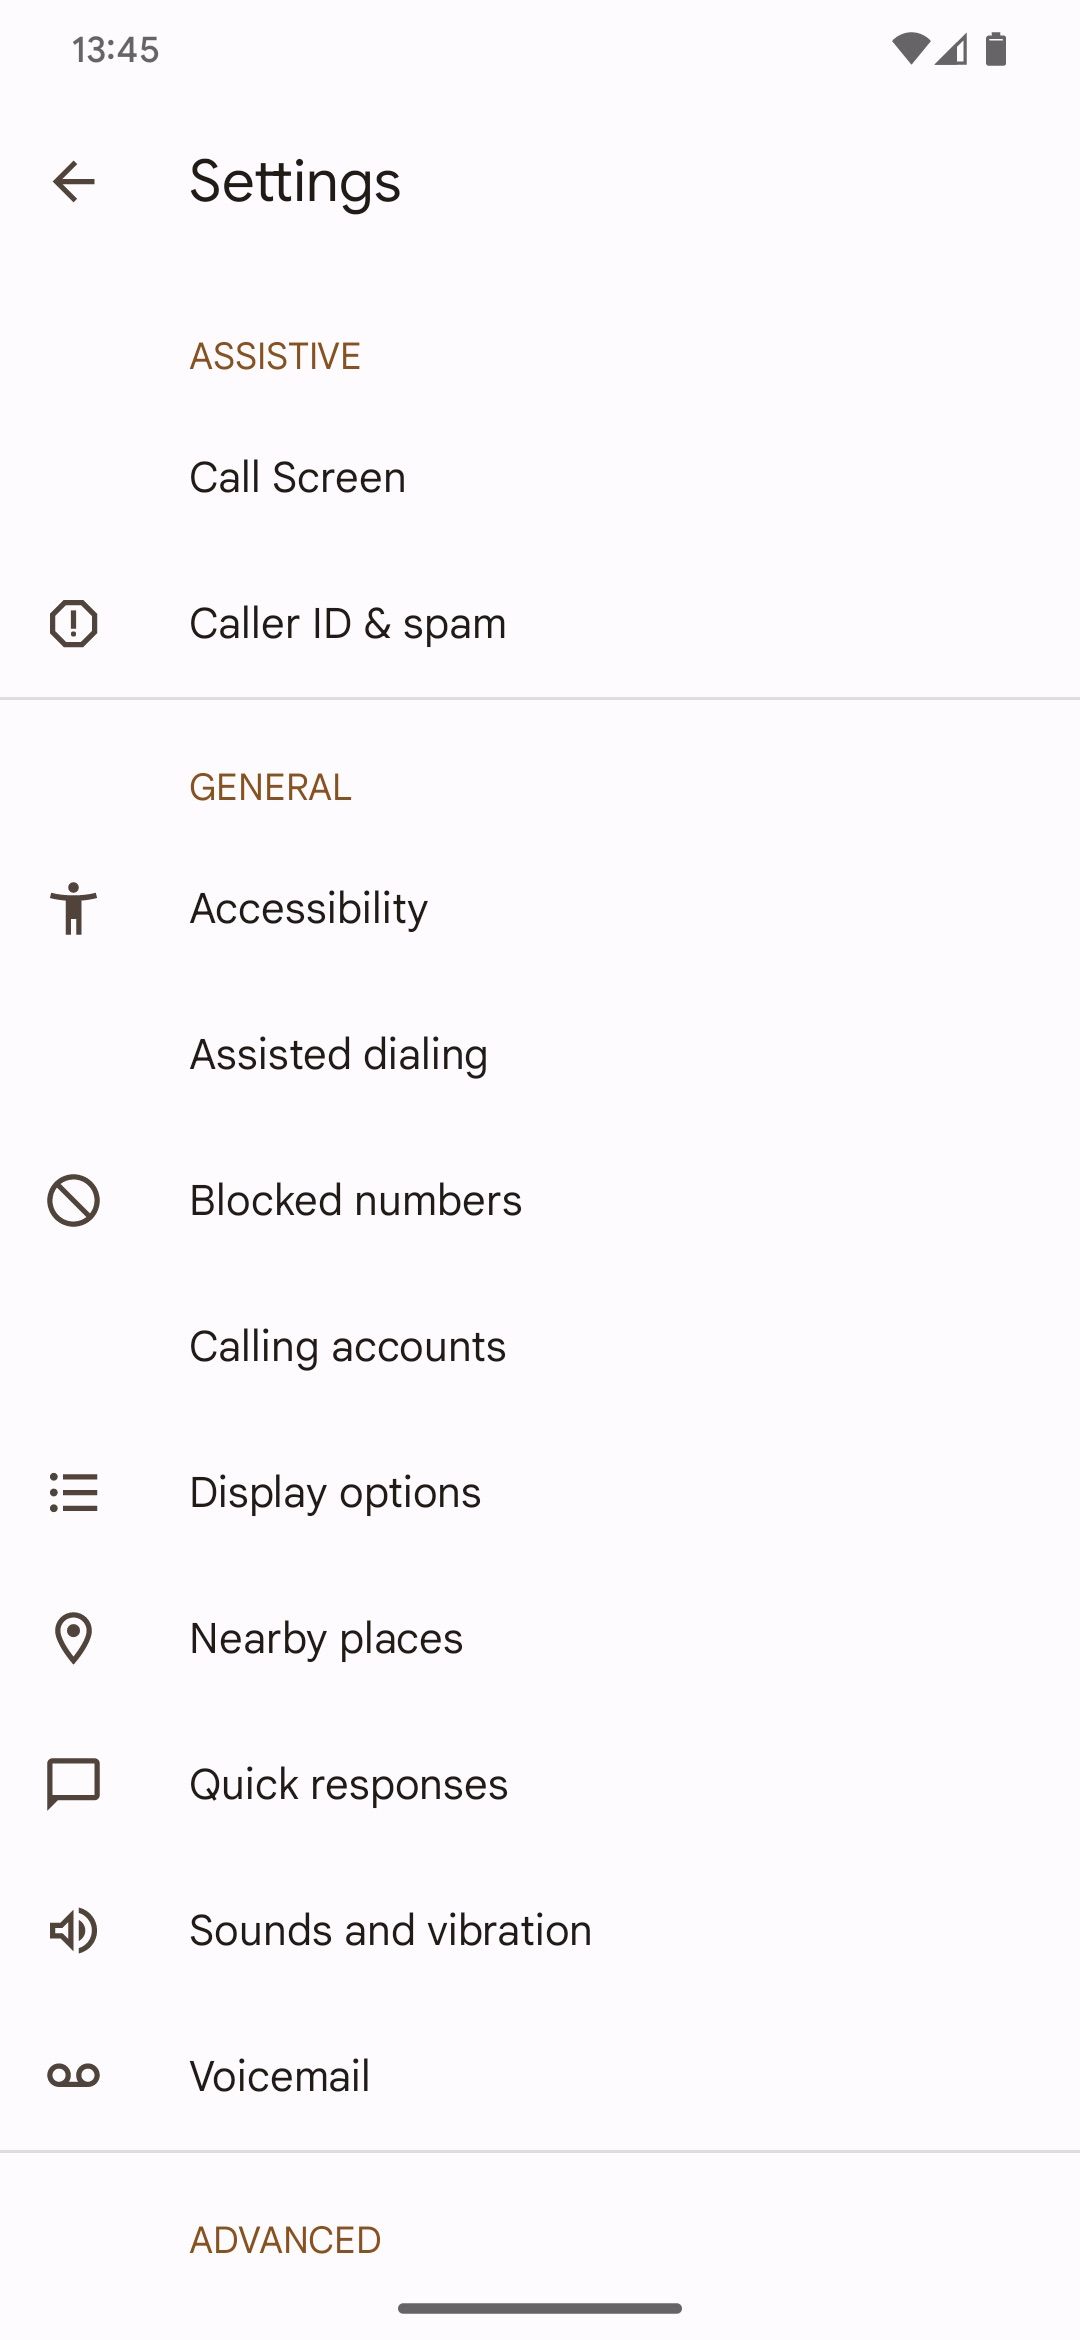 The Google Phone app settings